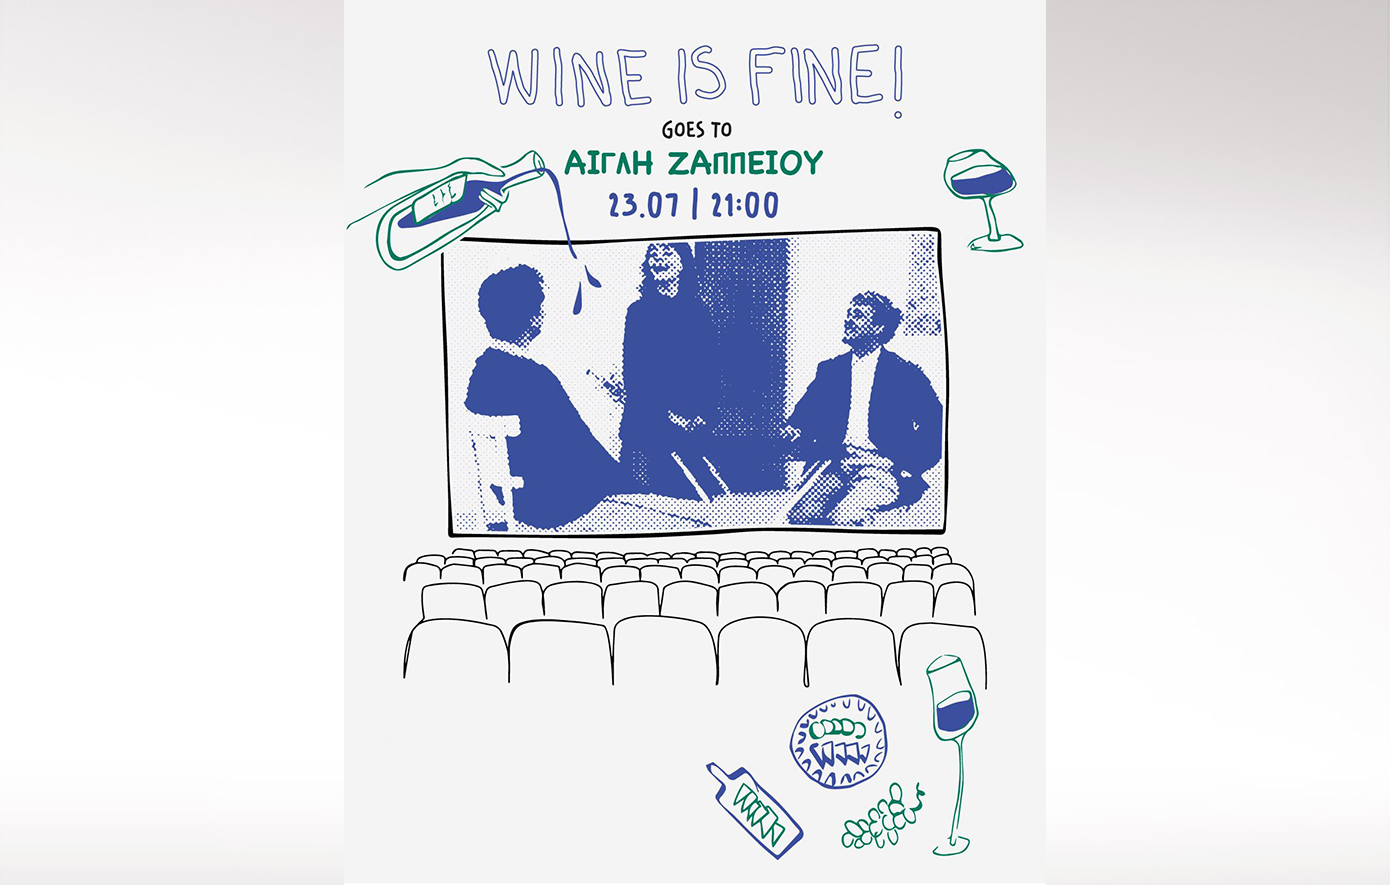 Το Wine is Fine έρχεται στο θερινό σινεμά της Αίγλης Ζαππείου για μια ξεχωριστή βραδιά